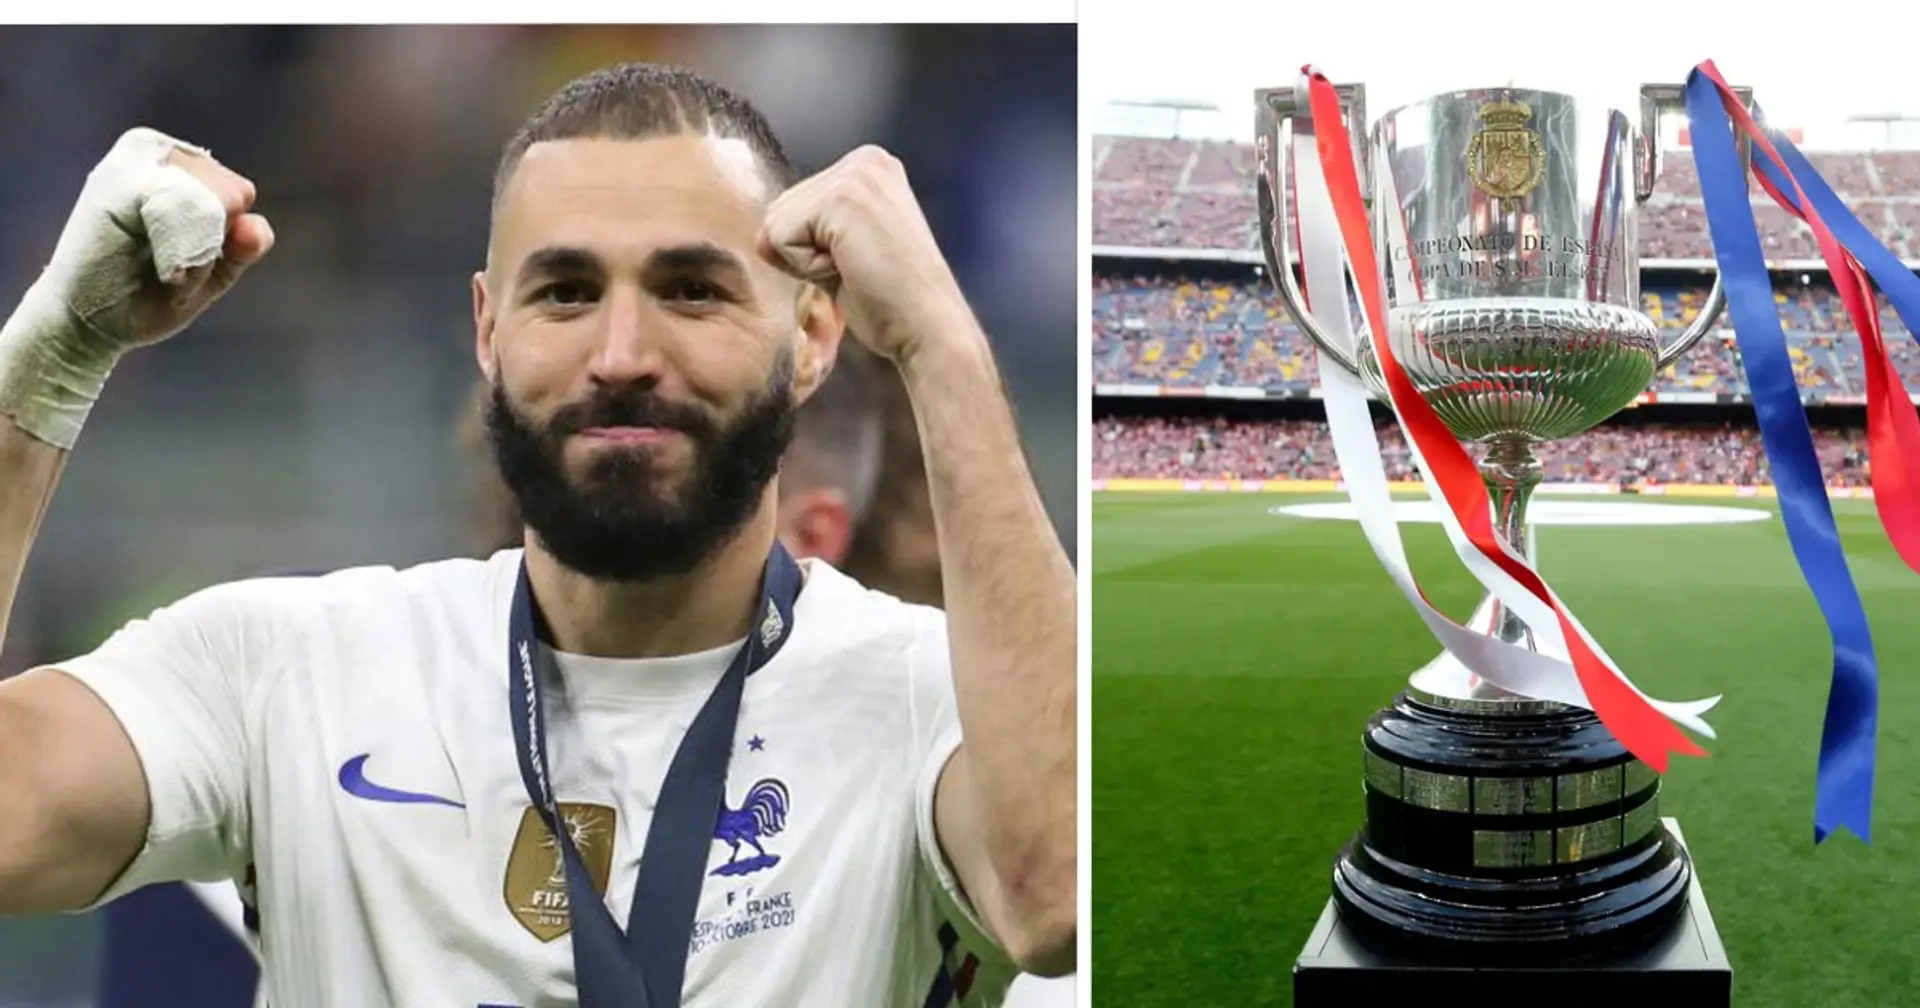 Wie viele Trophäen wird Real Madrid haben, wenn sie die Copa Del Rey gewinnen? Wir antworten 